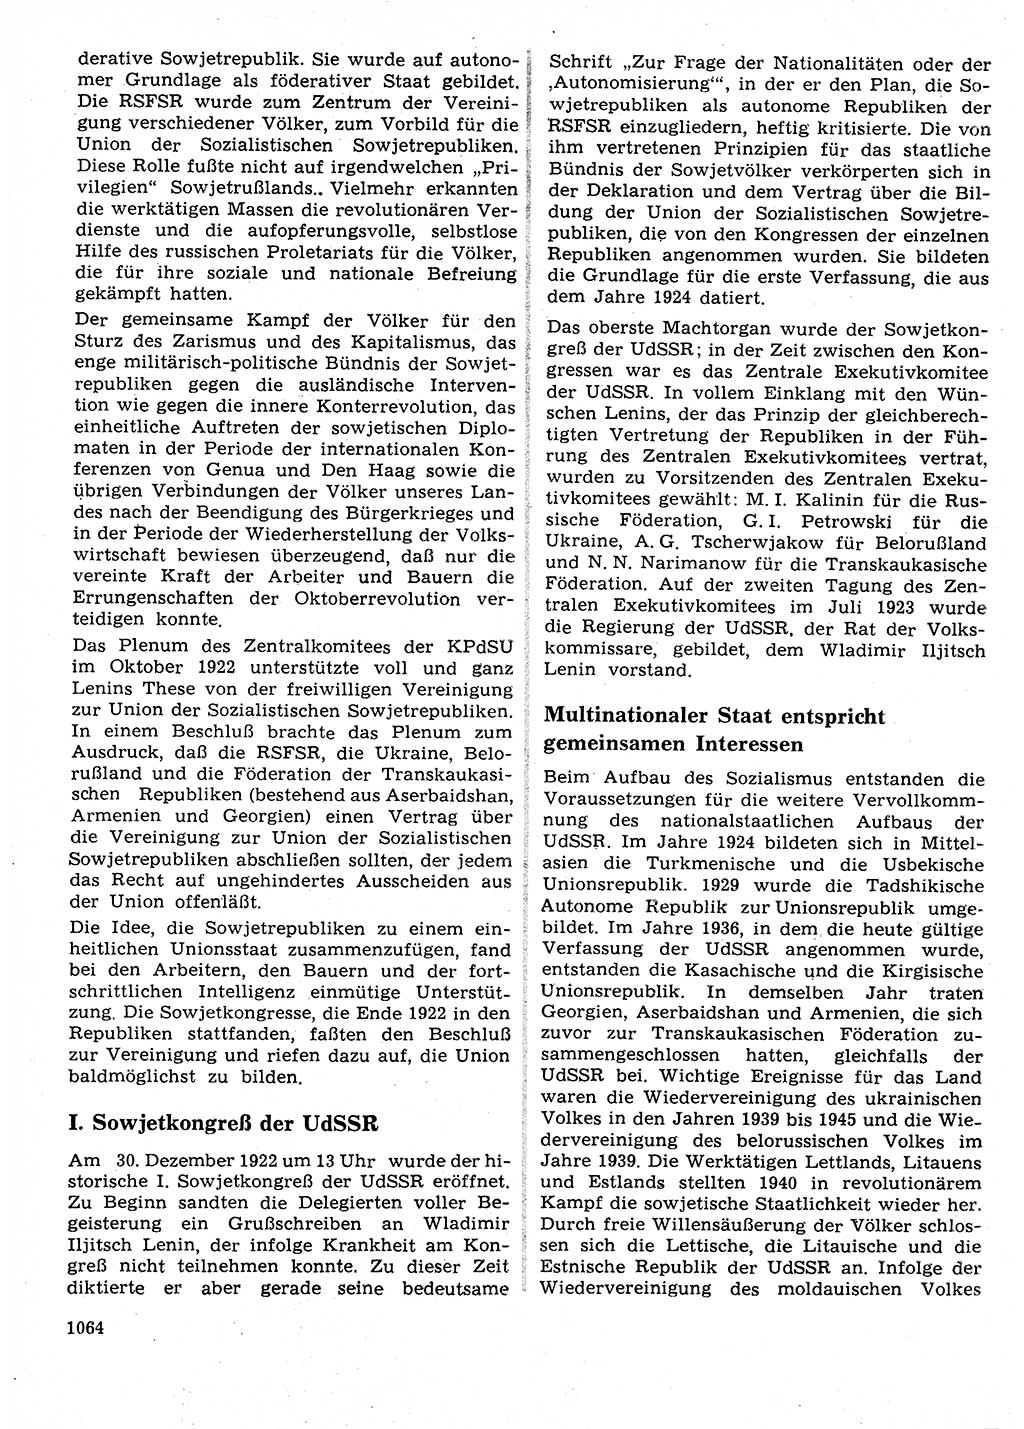 Neuer Weg (NW), Organ des Zentralkomitees (ZK) der SED (Sozialistische Einheitspartei Deutschlands) für Fragen des Parteilebens, 27. Jahrgang [Deutsche Demokratische Republik (DDR)] 1972, Seite 1064 (NW ZK SED DDR 1972, S. 1064)